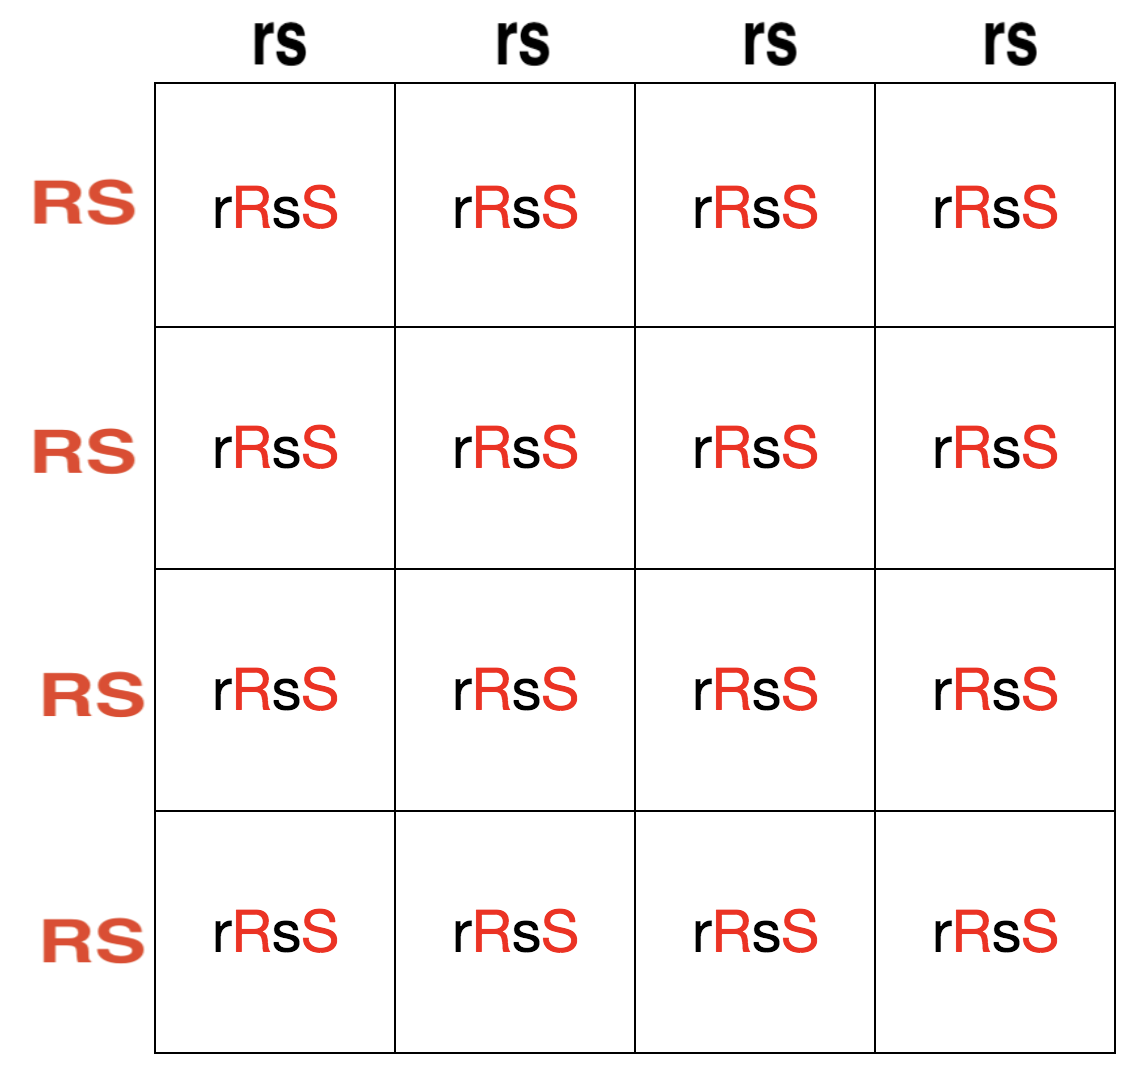 Configuración cuadrada de Punnett dihíbrida que muestra proporciones de genotipos de un cruce rrss x RRSS